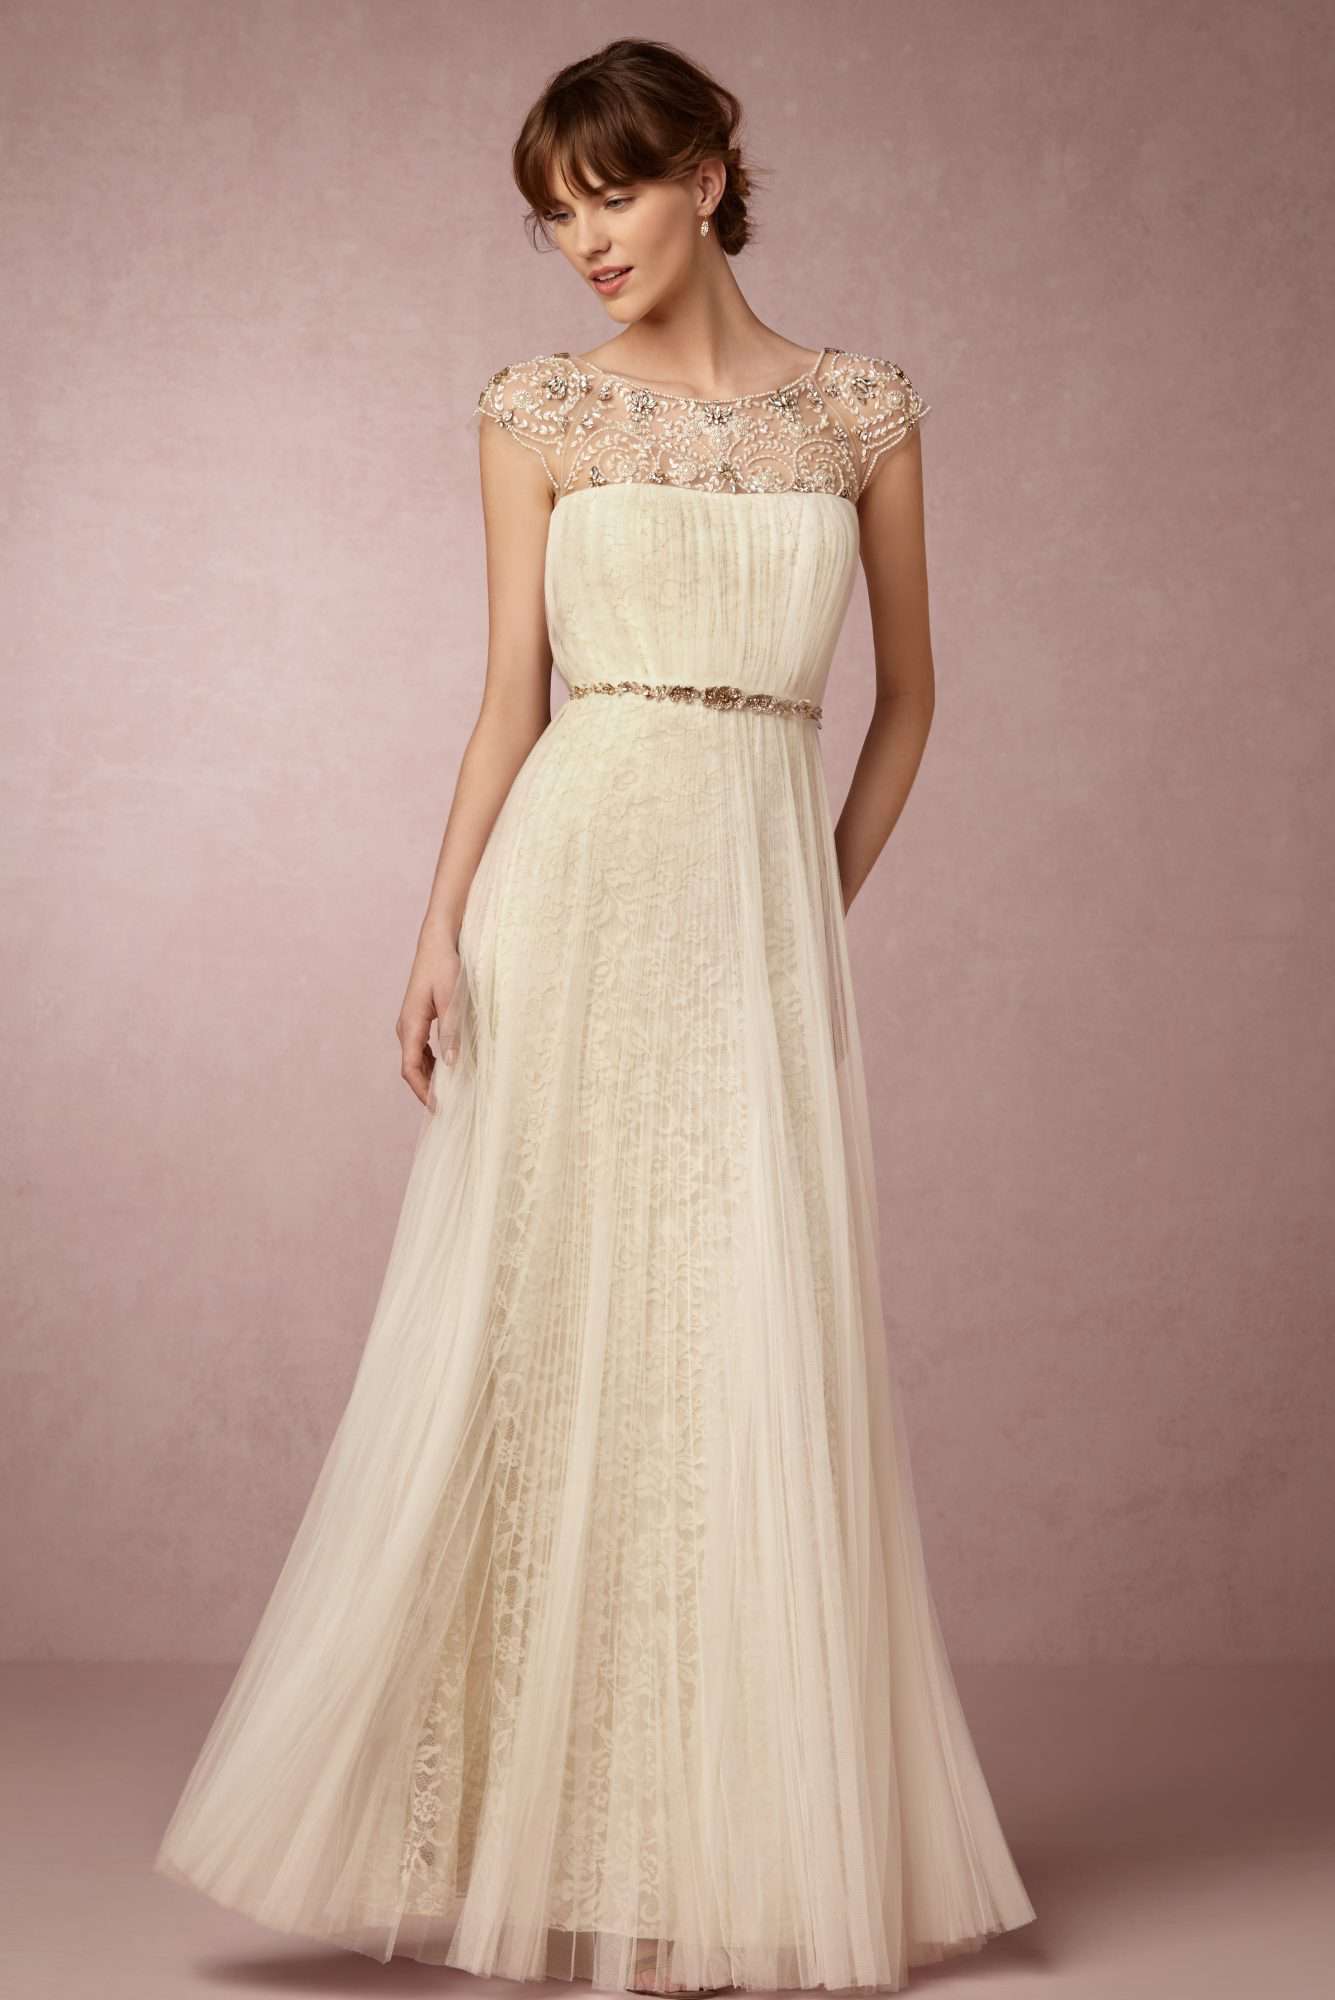 Marchesa x BHLDN Wedding Dress Capsule ...